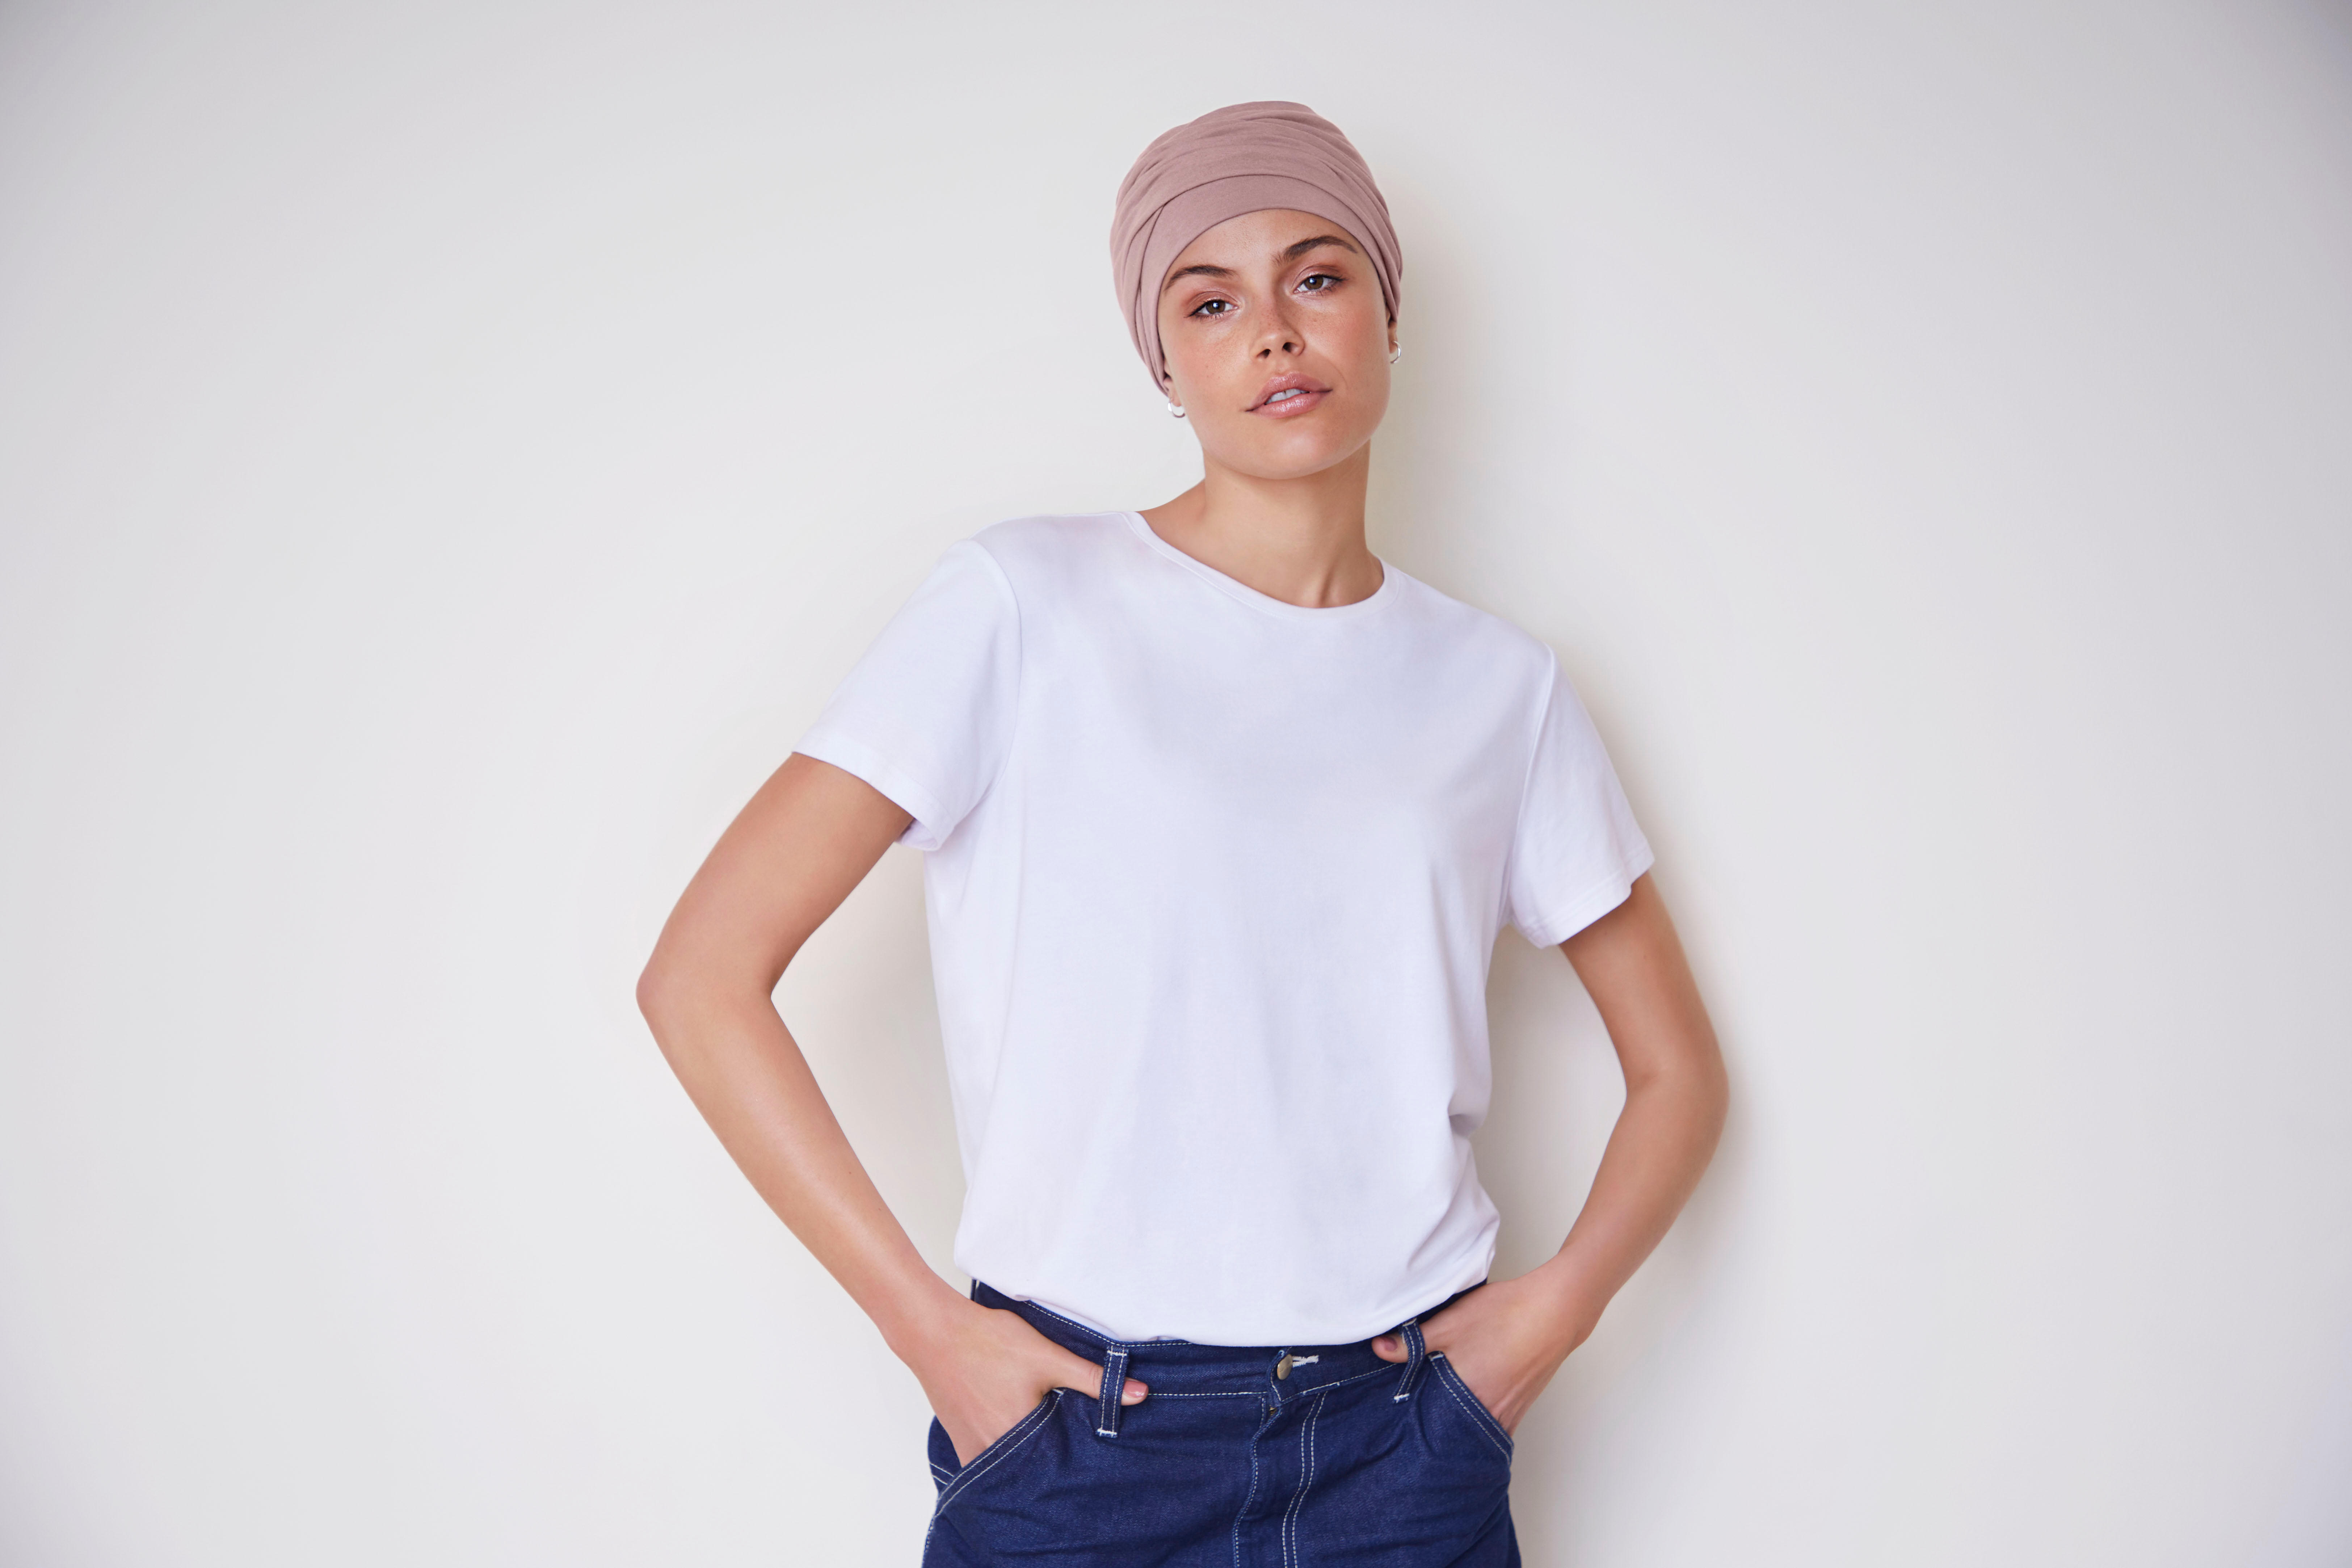 Turban für Frauen mit Haarausfall durch Alopezie oder Chemotherapie. Aderans Hair Center Berlin 030 24631801